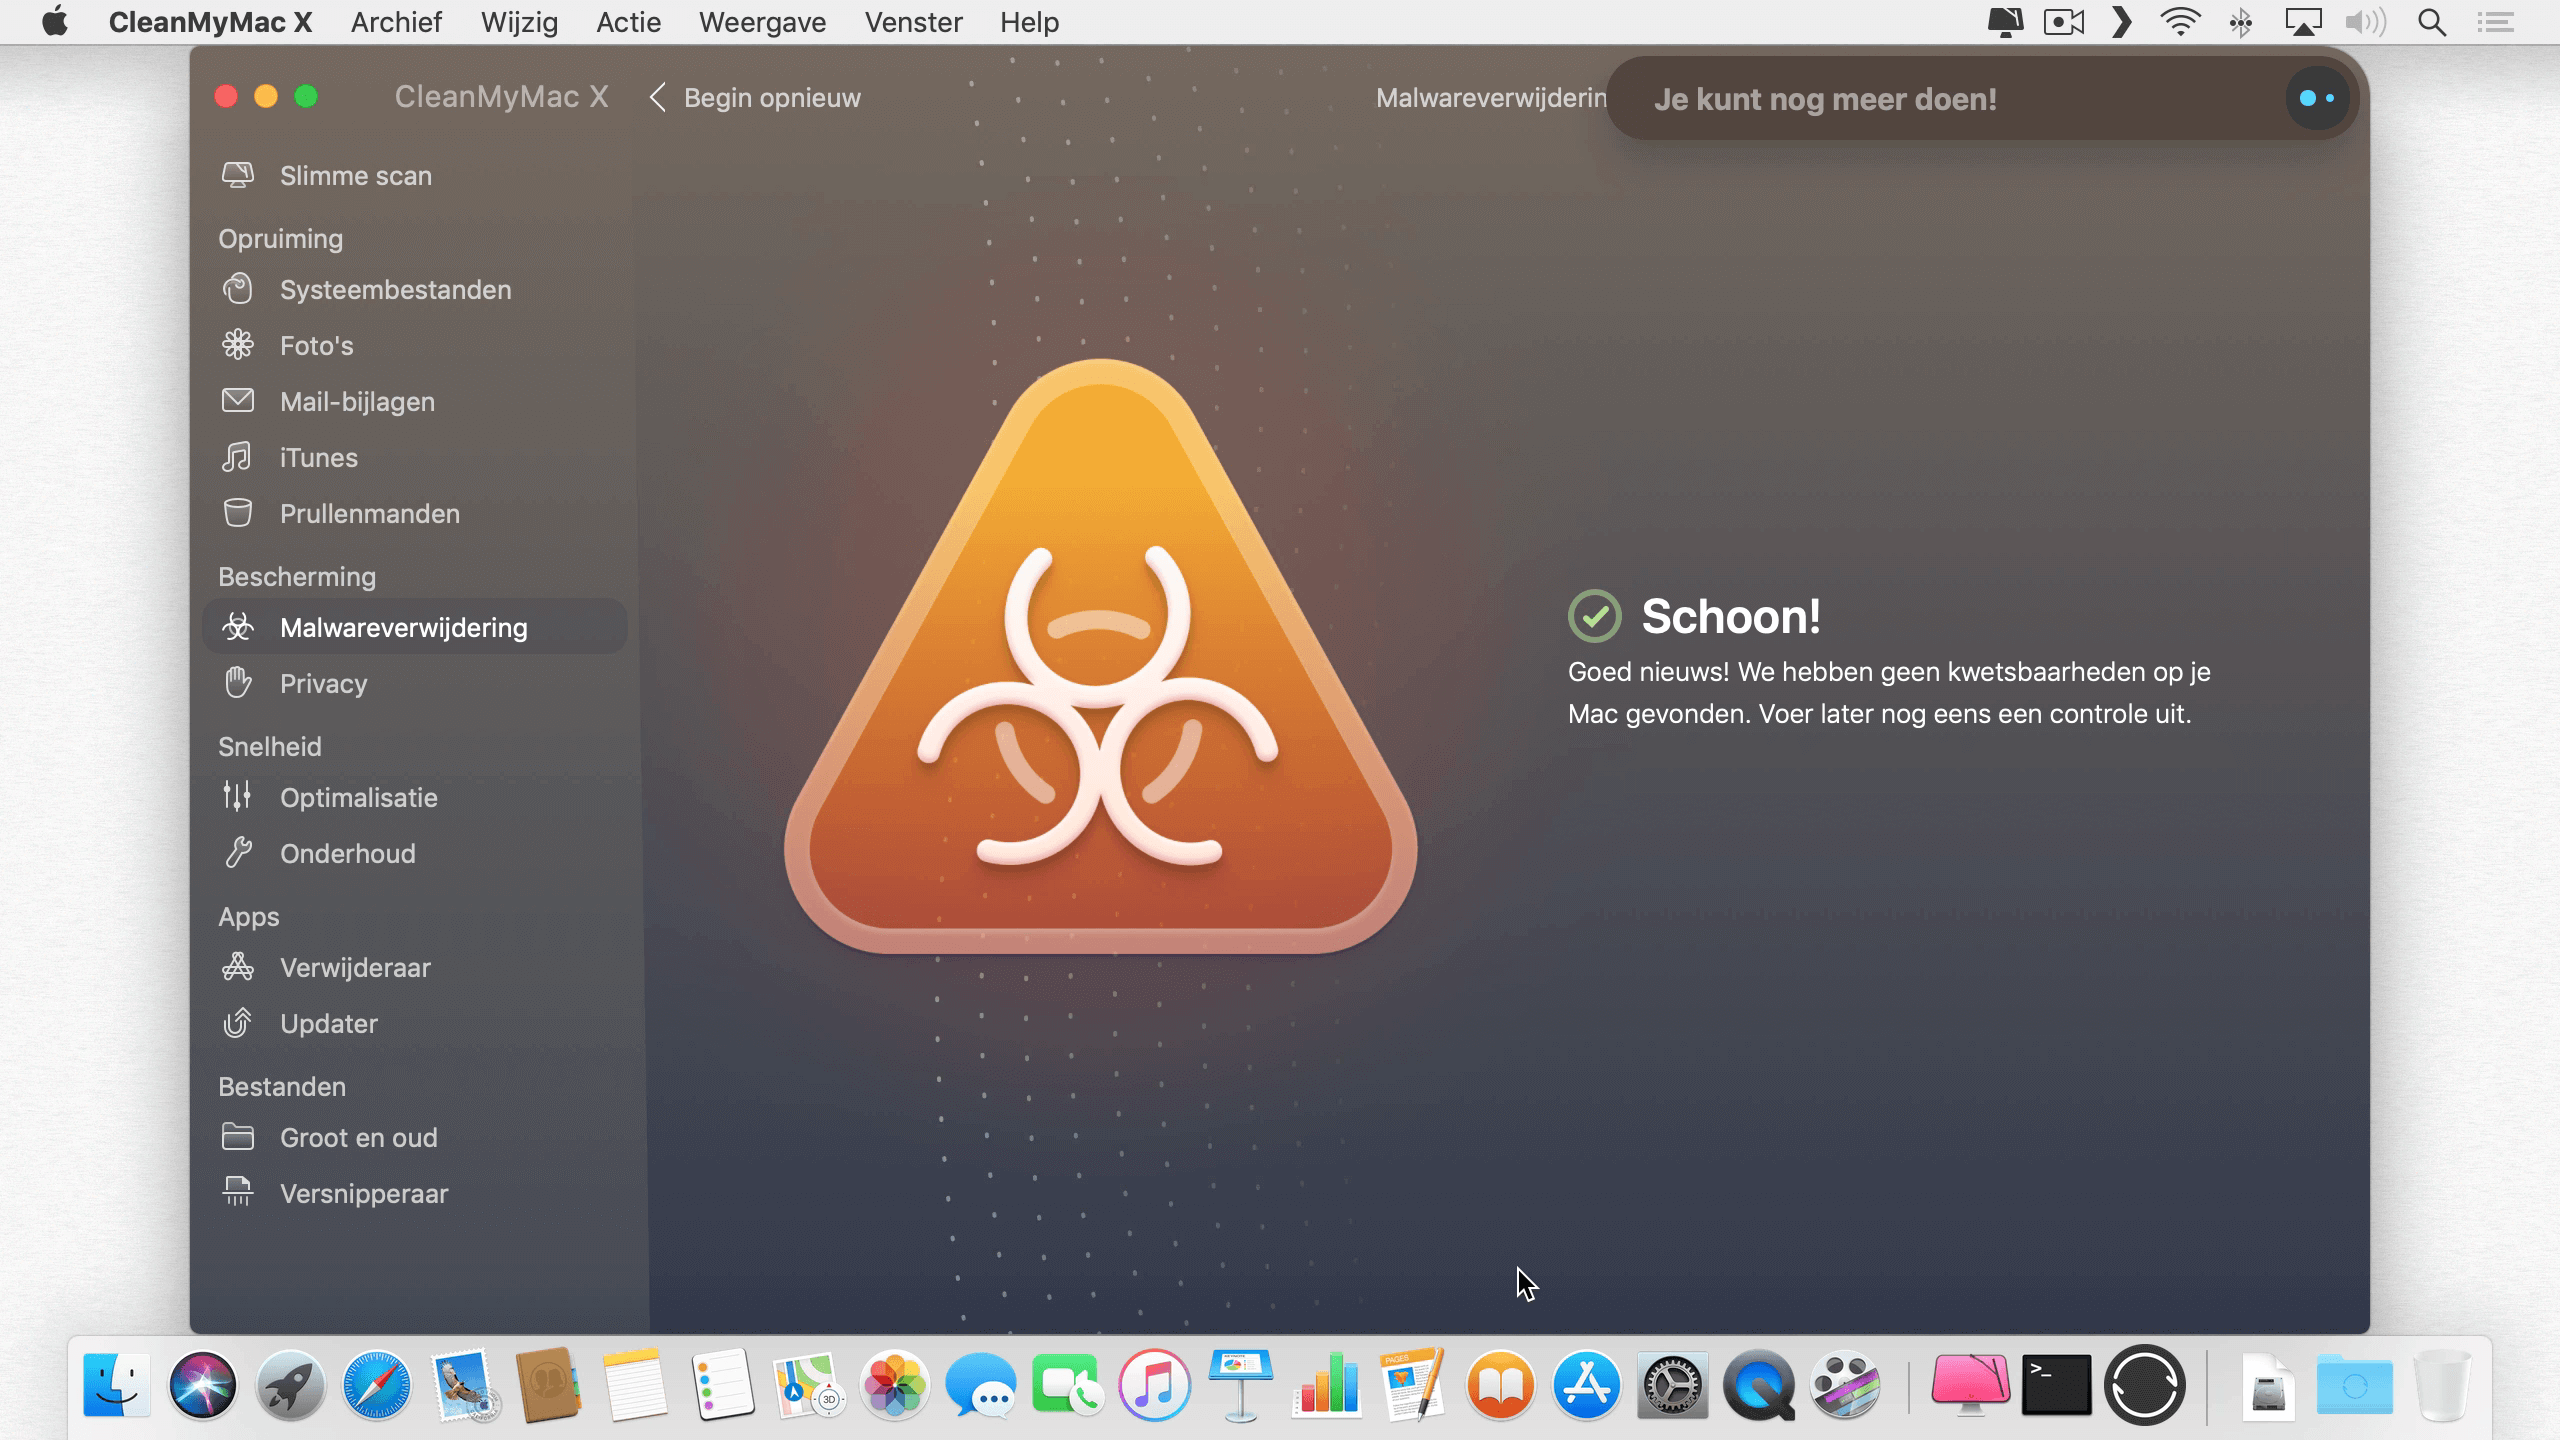 CleanMyMac X kon (gelukkig) geen malware vinden op mijn Macs